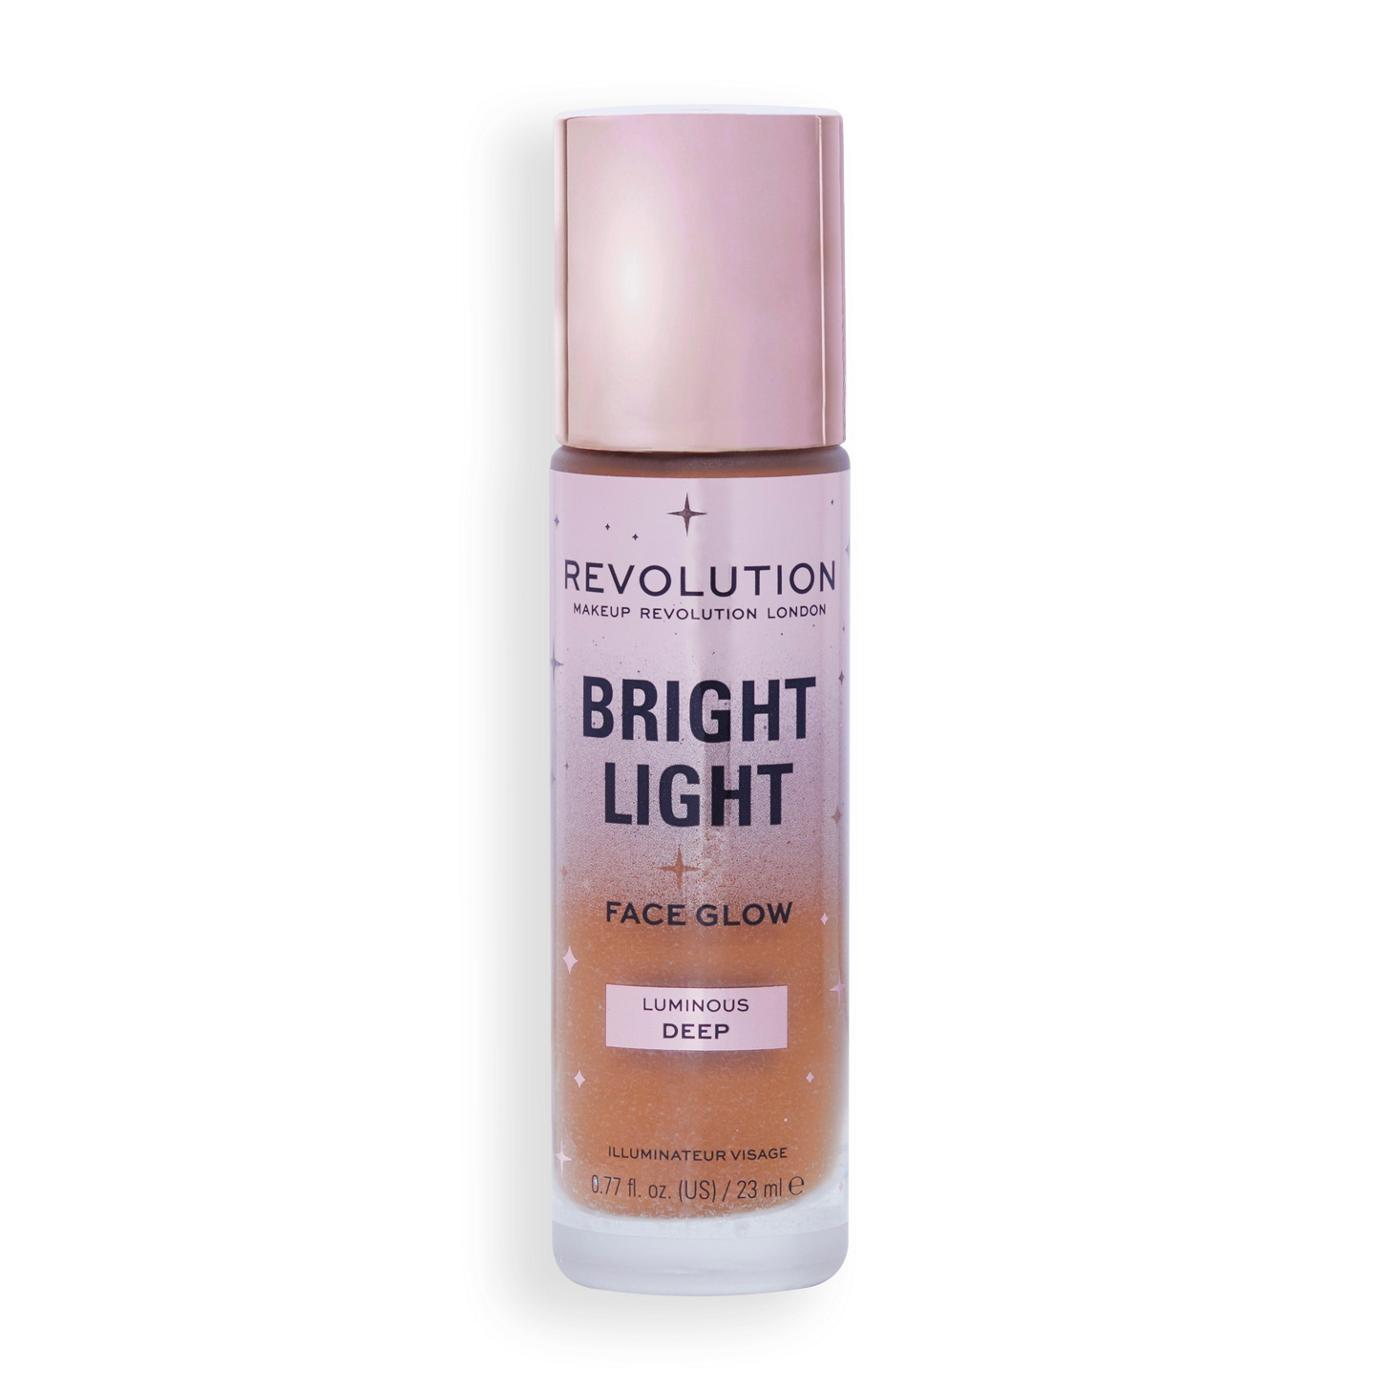 Makeup Revolution Bright Light Face Glow - Luminous Deep; image 1 of 3